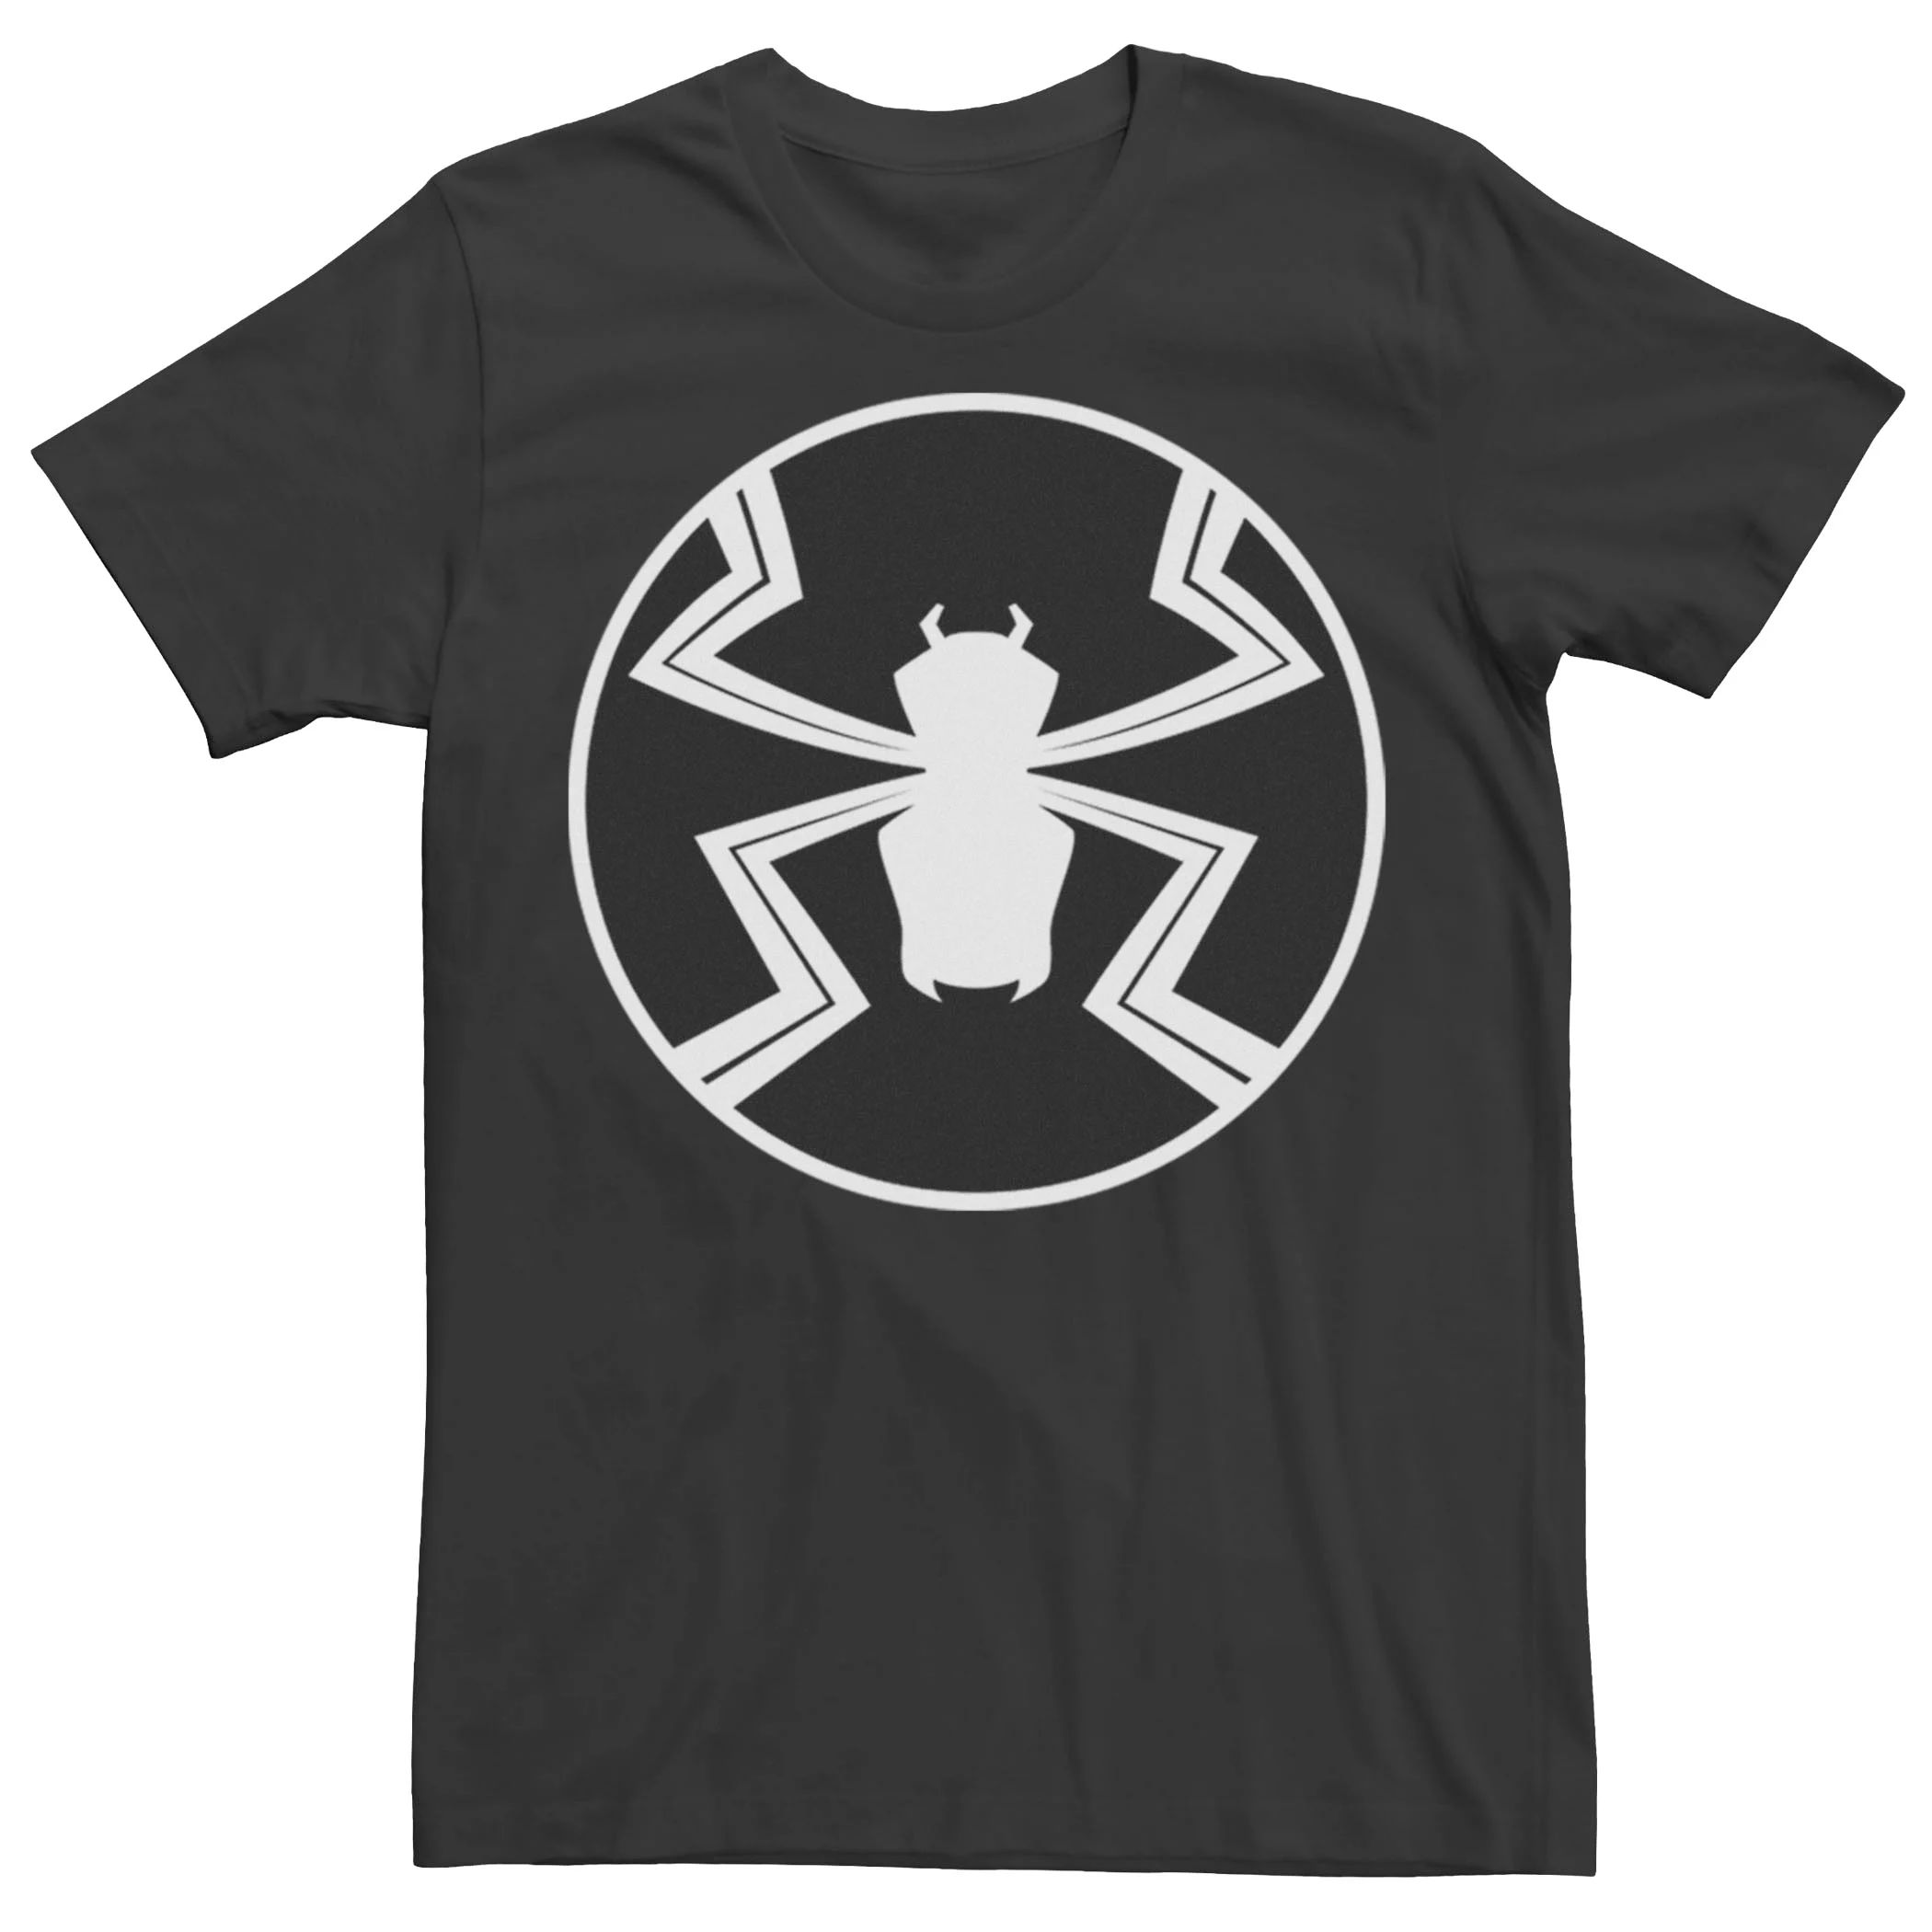 мужская классическая футболка с графическим логотипом marvel Мужская футболка с графическим логотипом Marvel Agent Venom